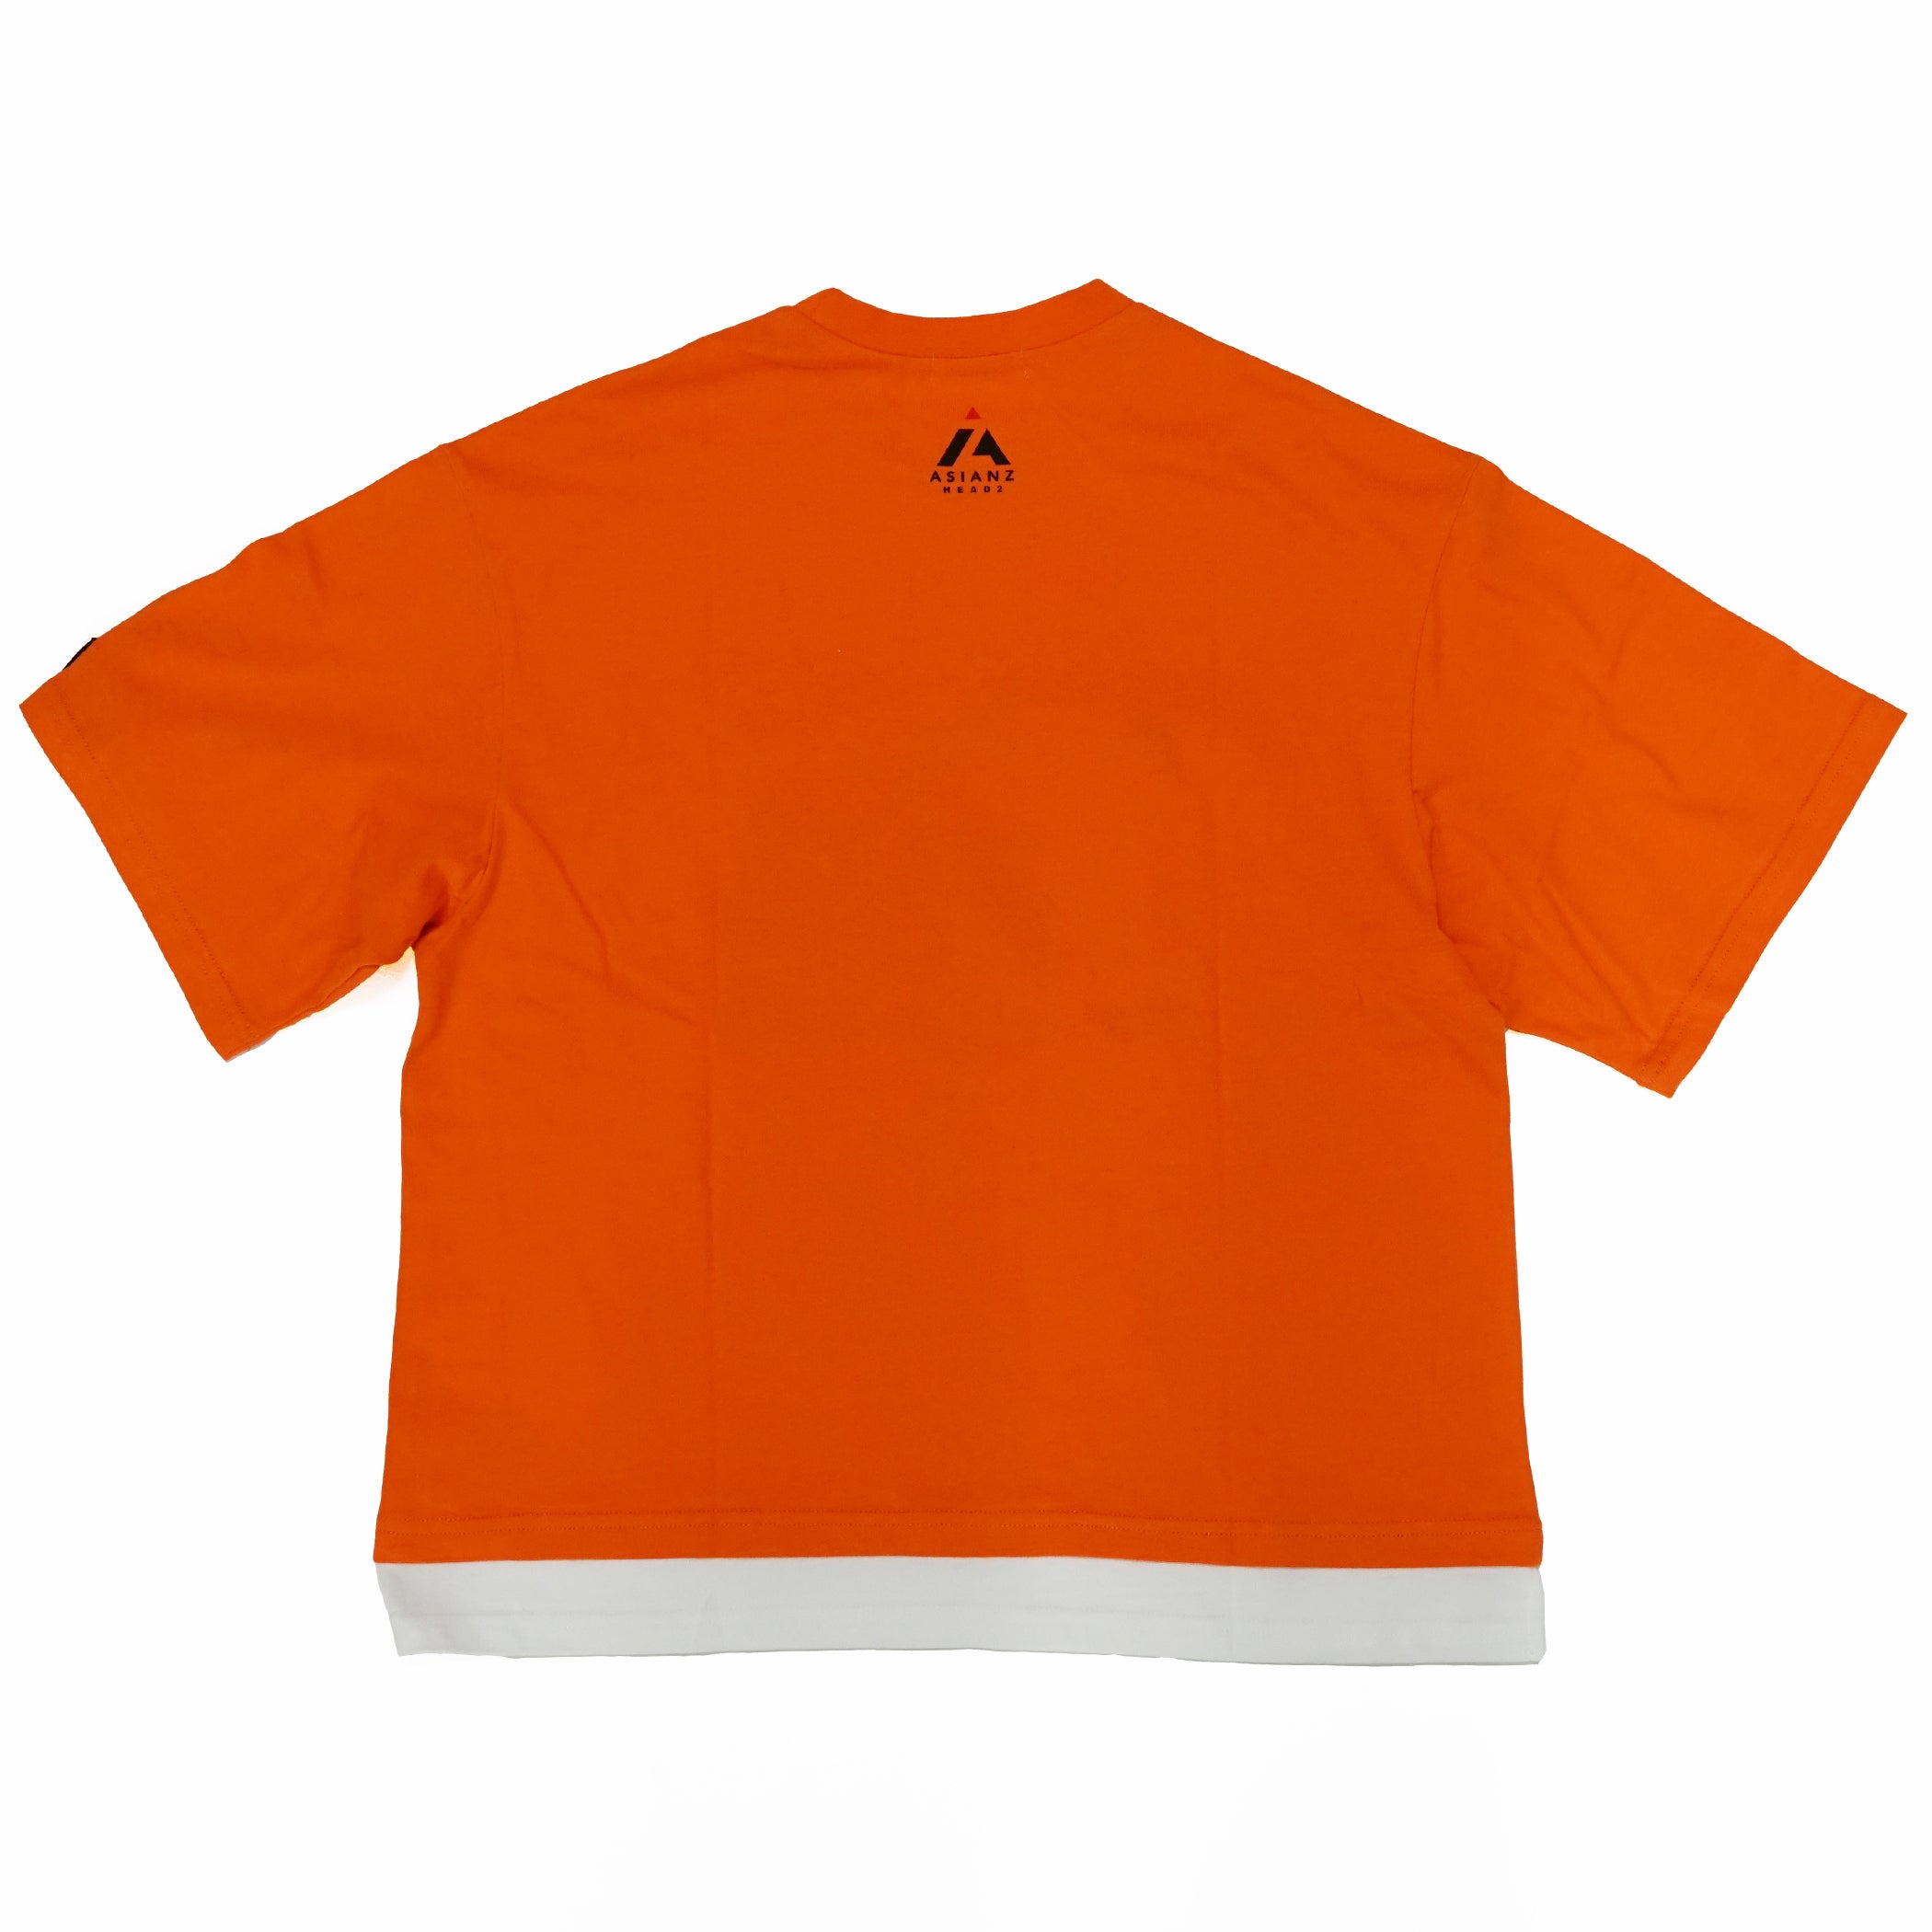 (セール商品) ASIANZ HEAD2 メッシュポケット Tシャツ